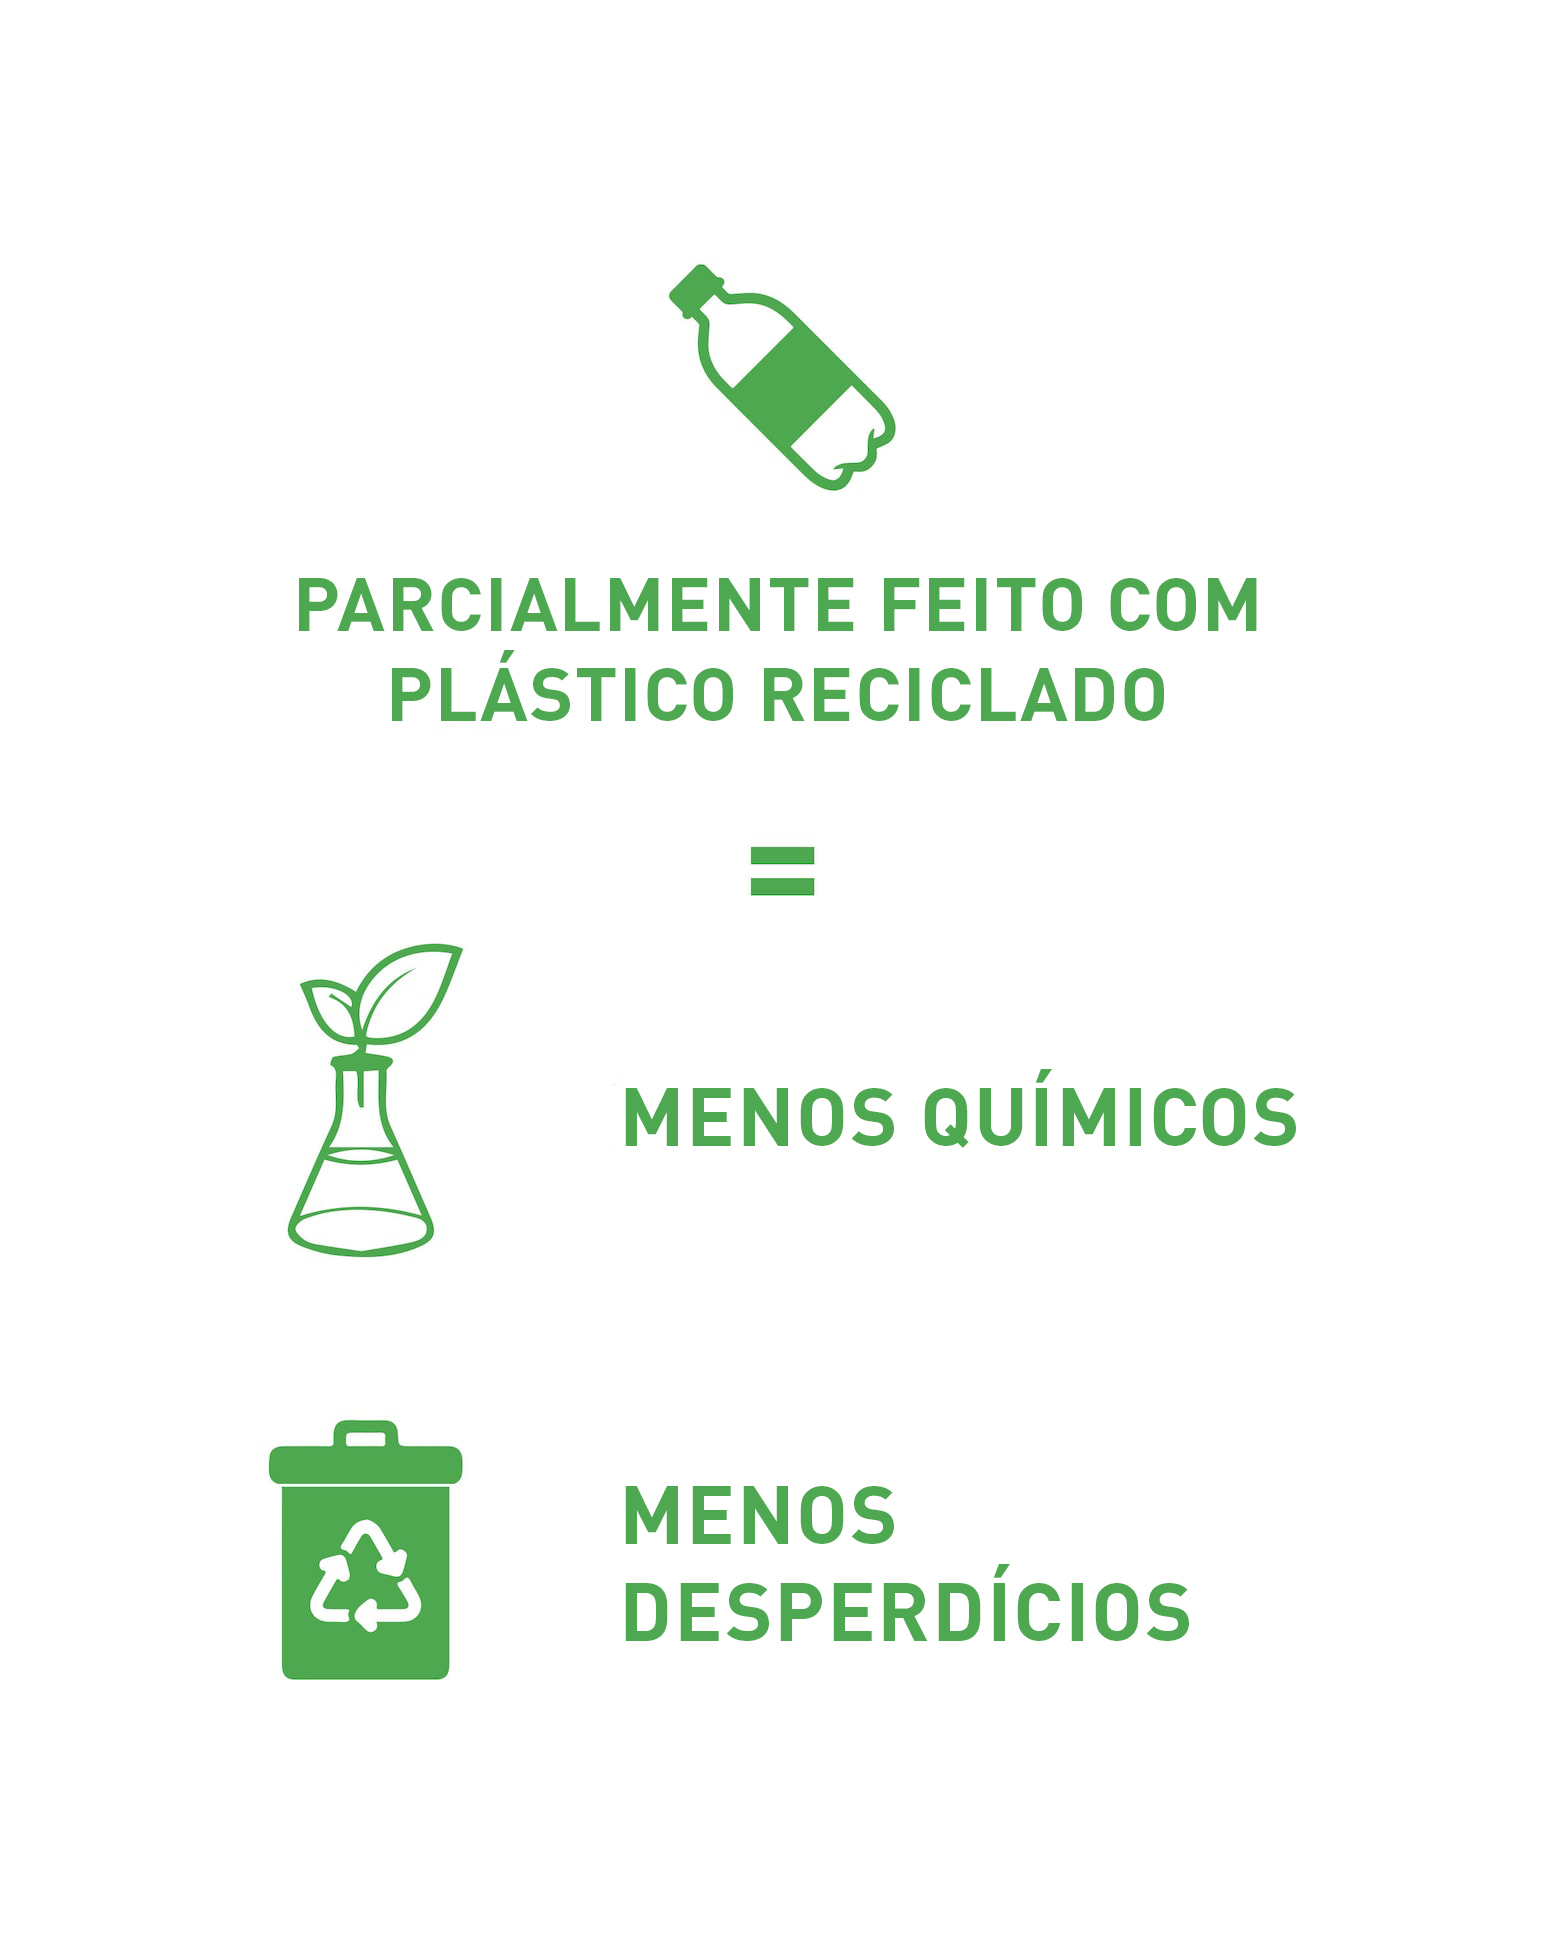 Peças exclusivas Armani Exchange feitas parcialmente a partir de fibras recicladas e plástico recuperado, alinhando estilo e sustentabilidade